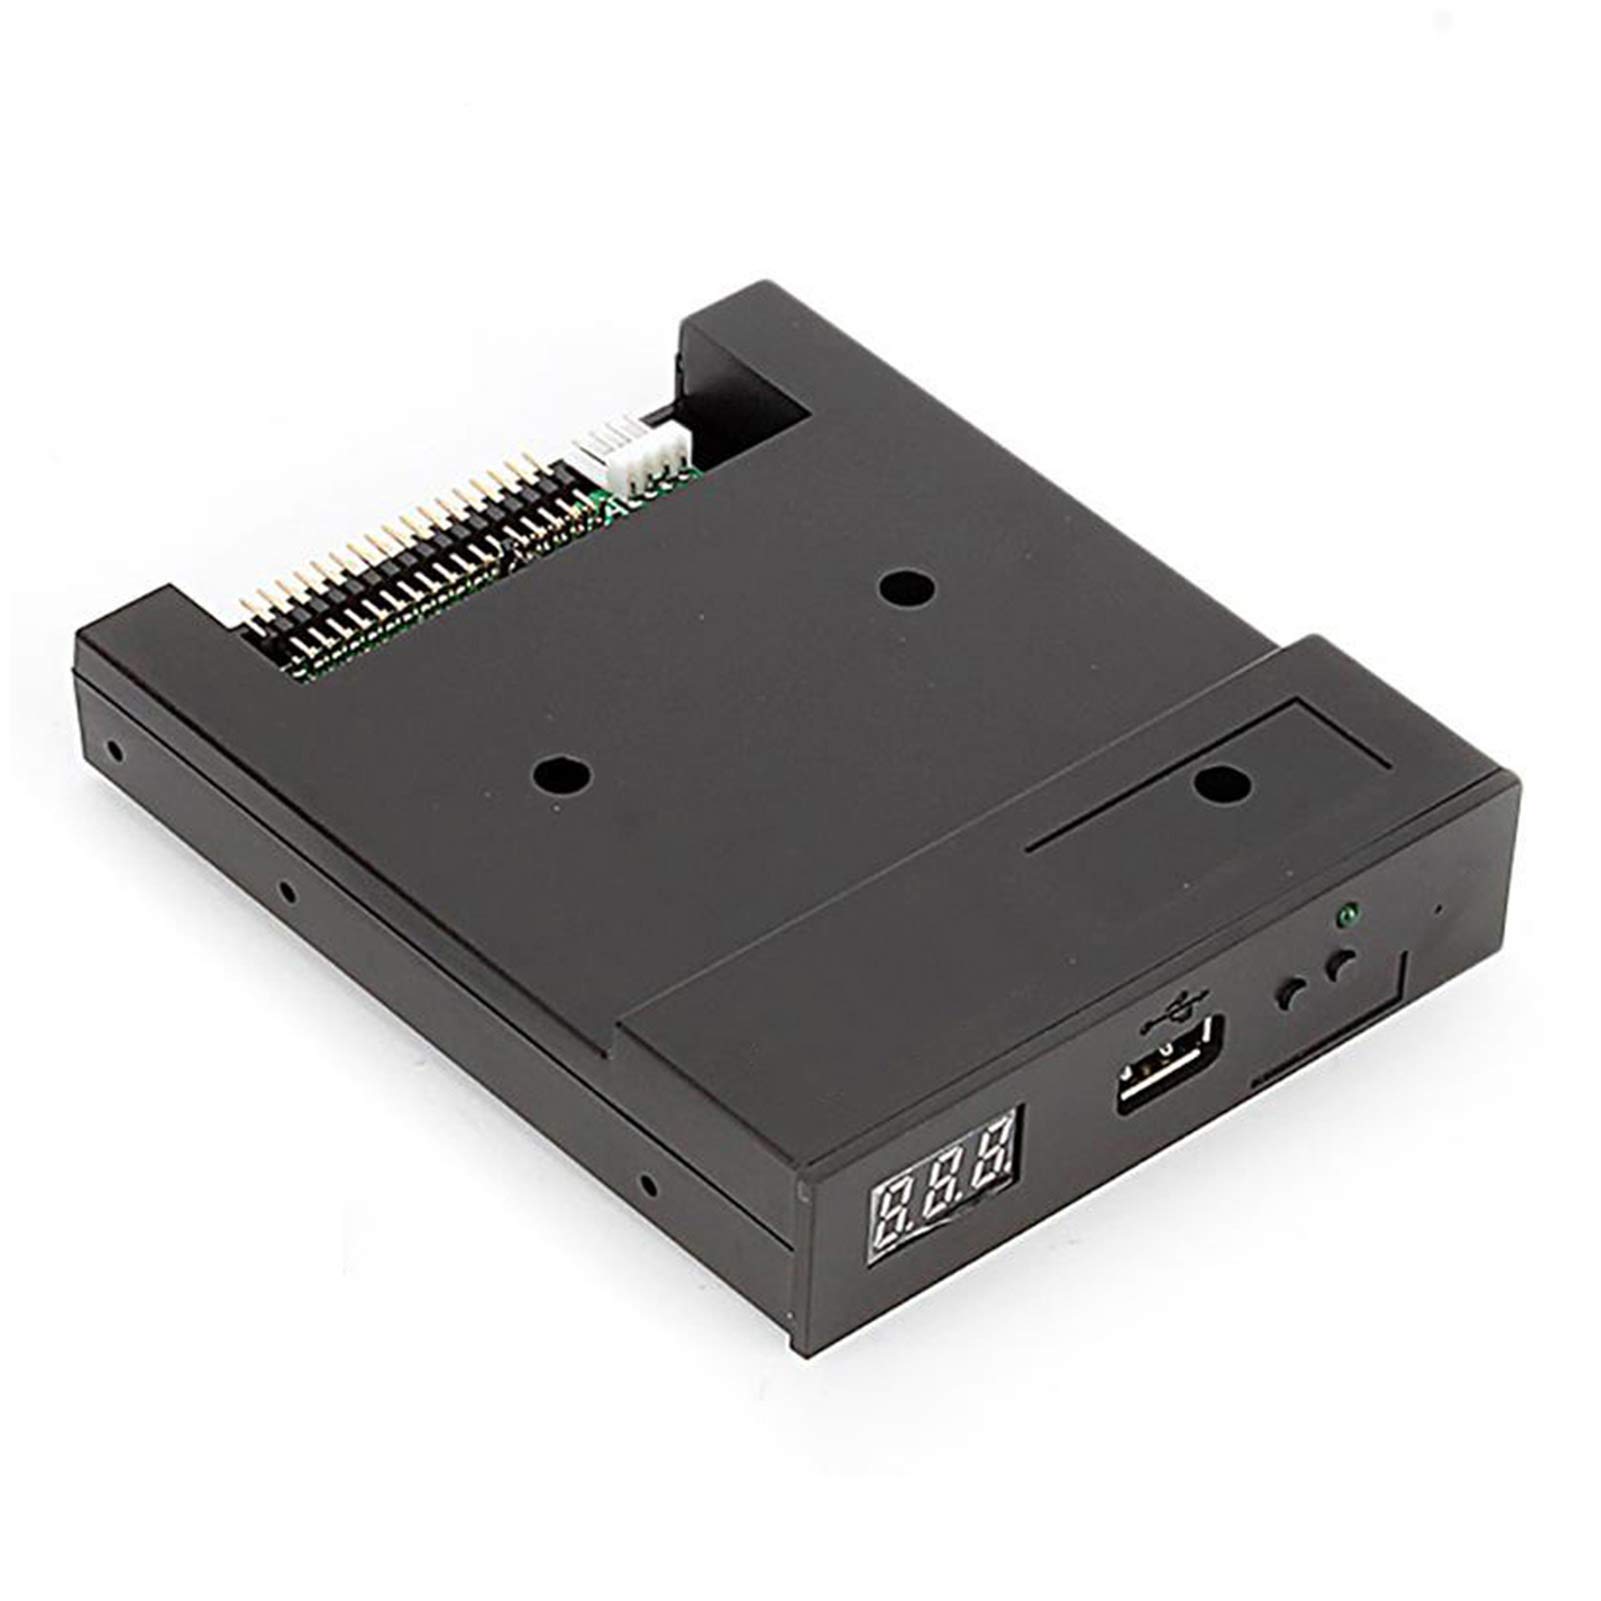 Diskettenlaufwerk-Emulator, 1,44 MB USB-Laufwerk, Diskettenleser-Emulator USB-Emulatortreiber für industrielle Steuerungsgeräte für Musiktastaturen